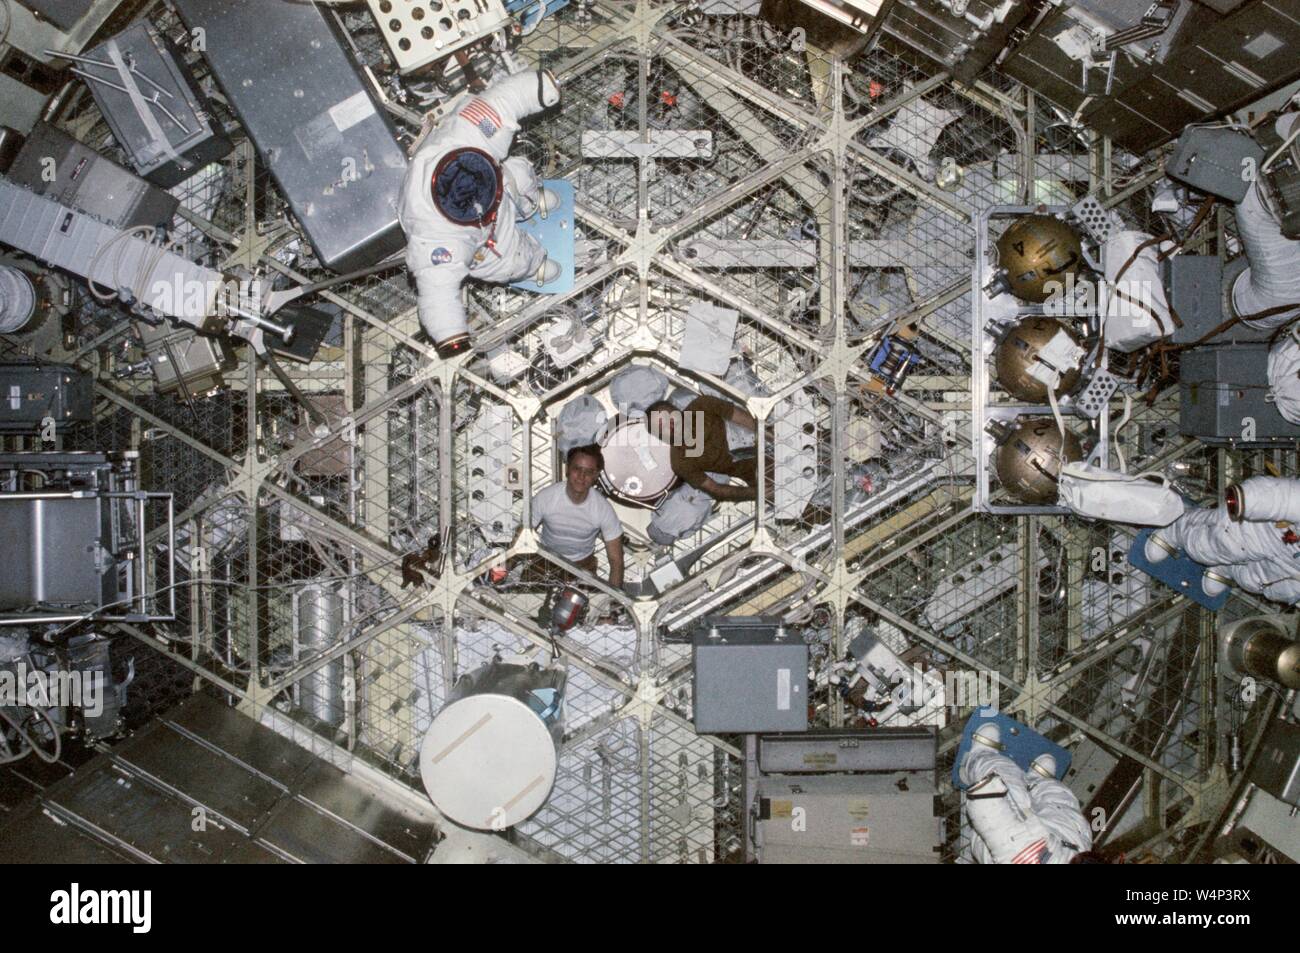 Astronauten Edward G Gibson und Gerald P Carr in der luftschleuse Modul des Skylab Orbital Workshop, 1974. Mit freundlicher Genehmigung der Nationalen Luft- und Raumfahrtbehörde (NASA). () Stockfoto